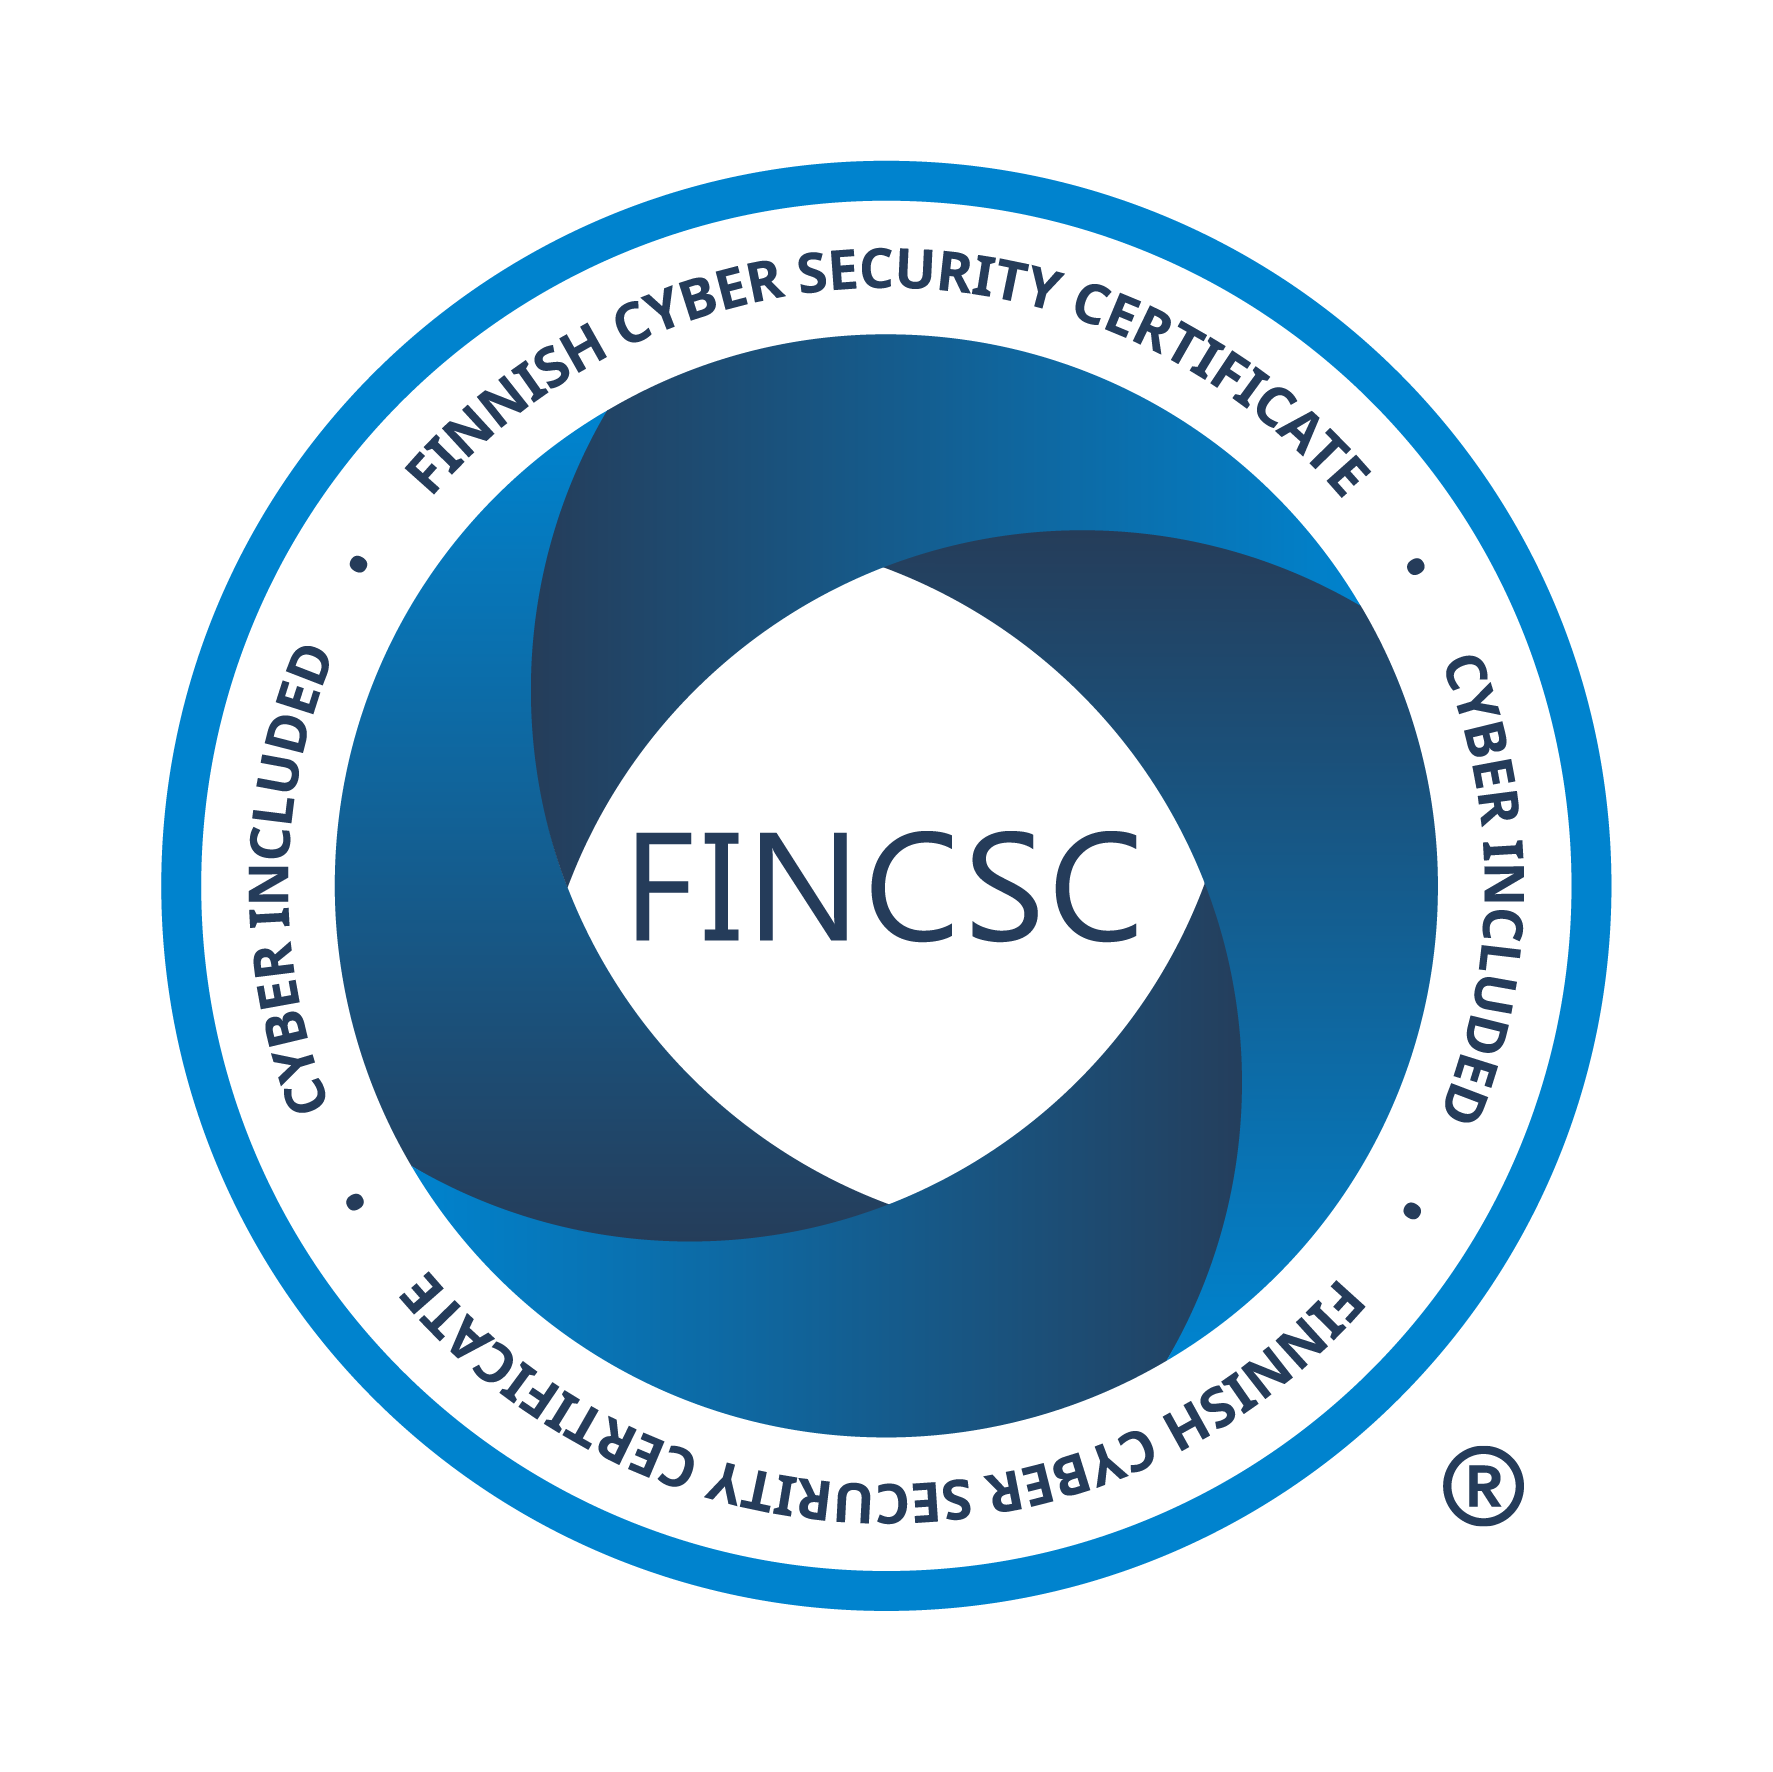 FINCSC-kyberturvallisuussertifikaatti